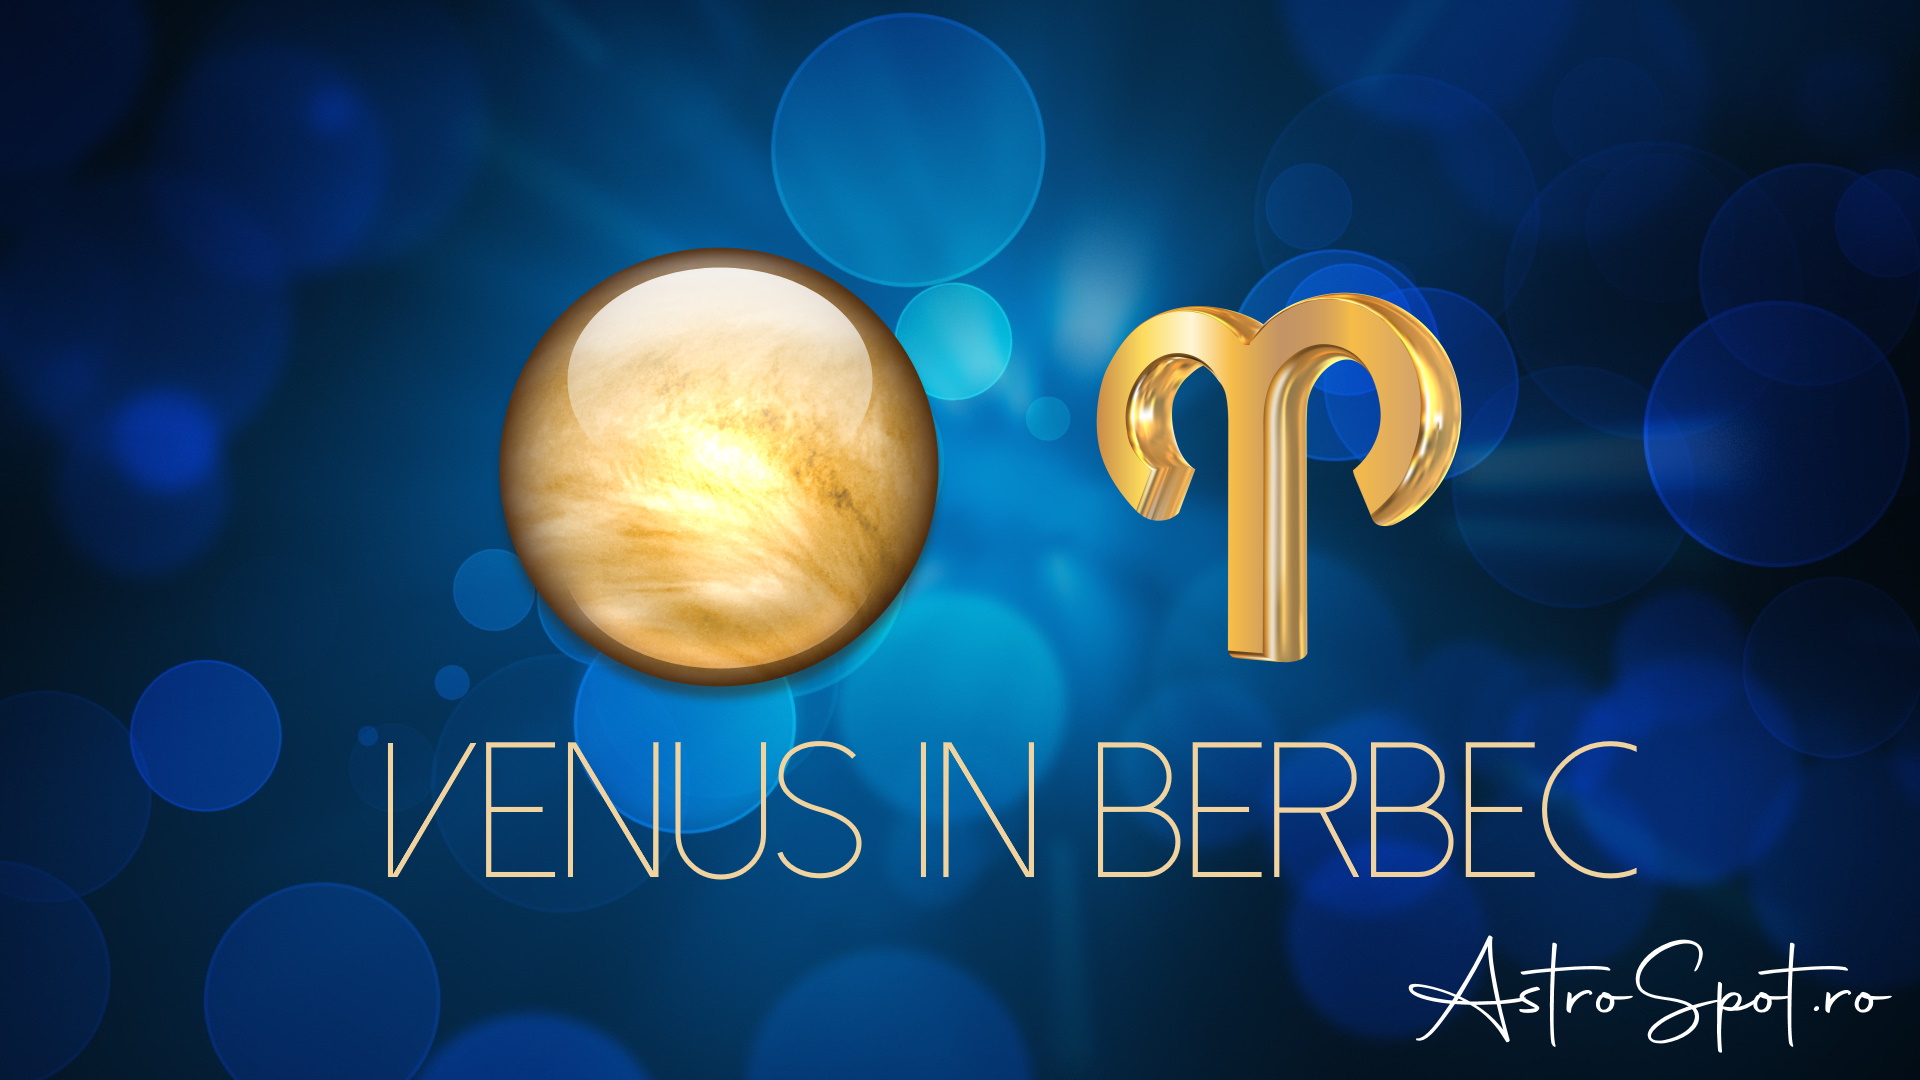 Venus in Berbec